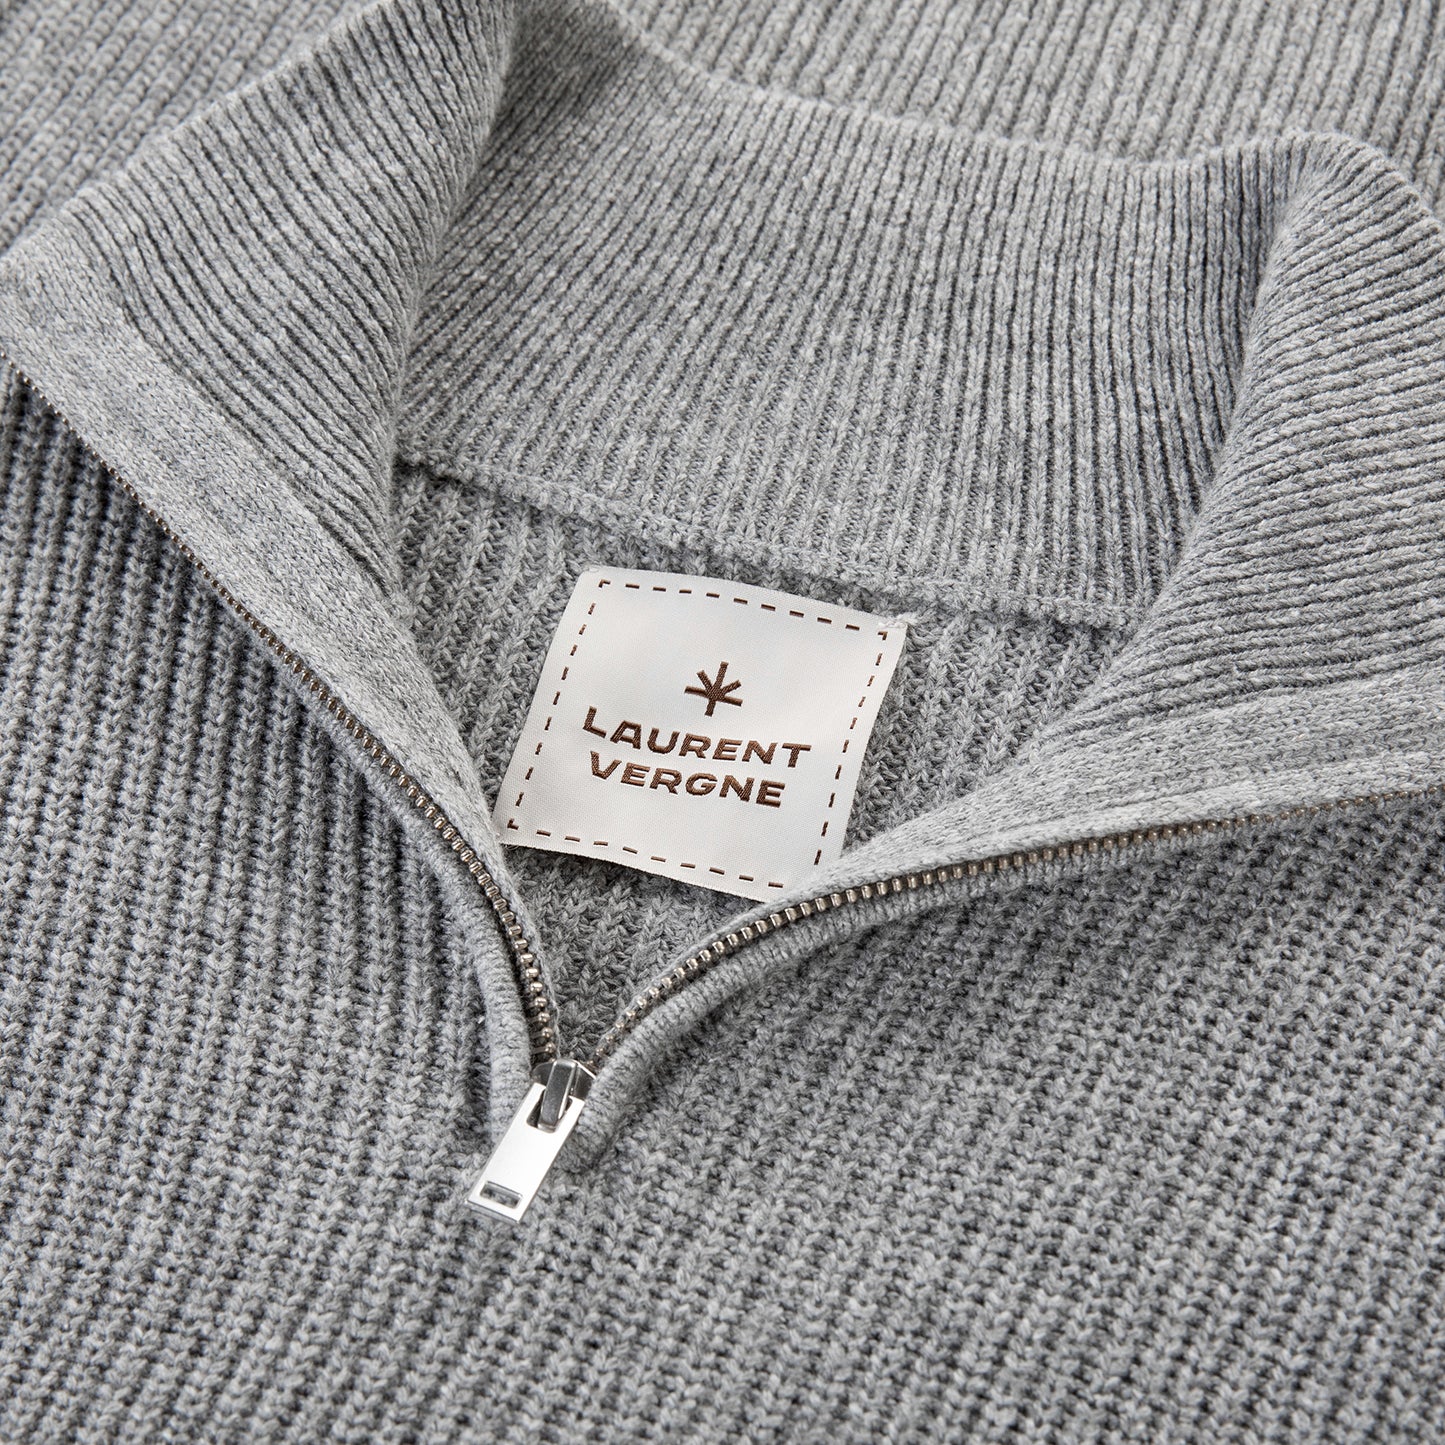 Auvergne Zipper Sweater - Grey